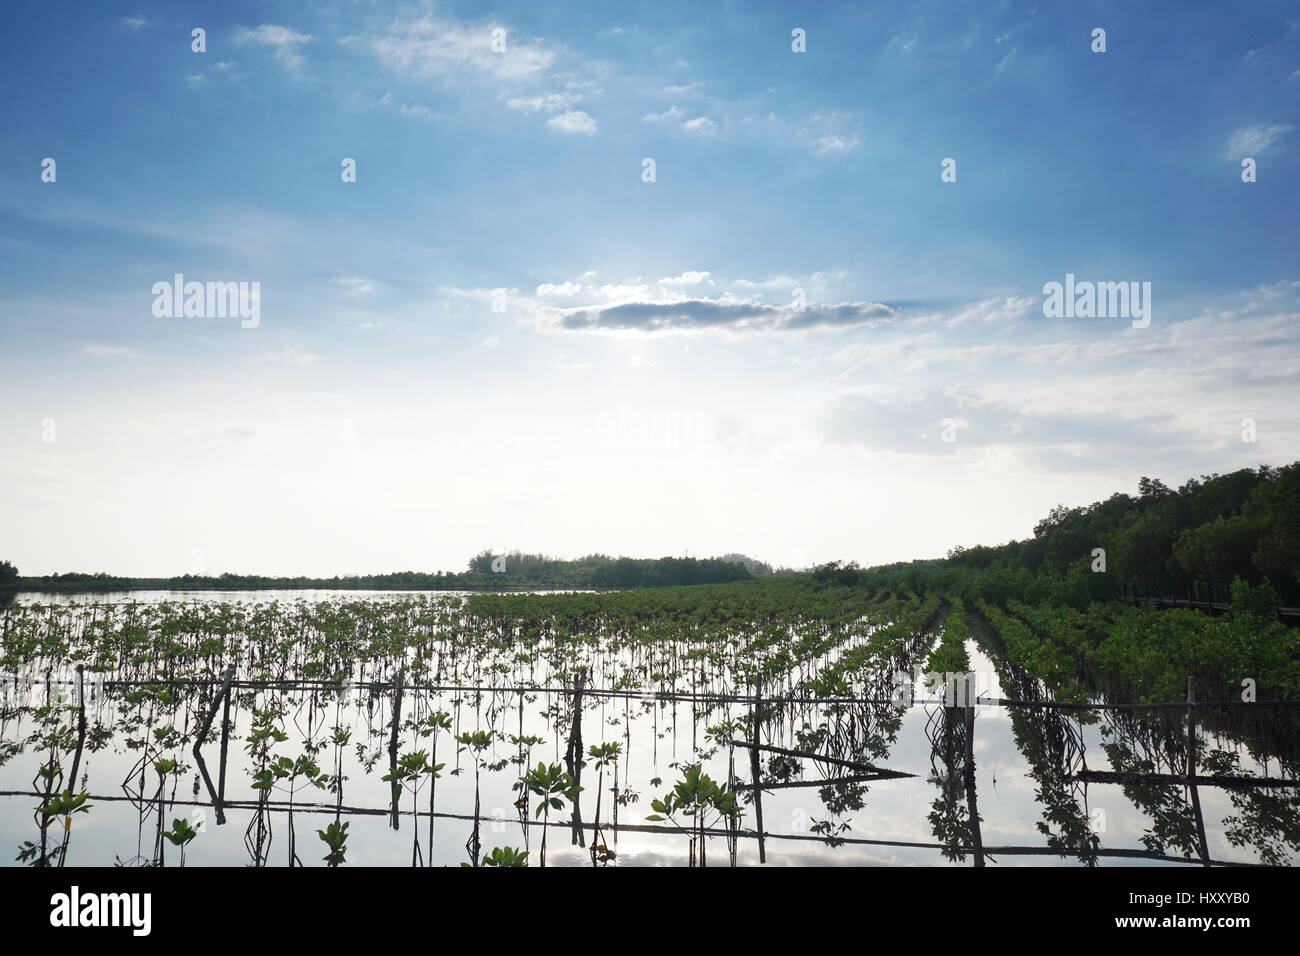 La foresta di mangrovie in costiera tropicale. Mangrovie sono tolleranti di sale di alberi e sono adattati alla vita in difficili condizioni costiere. Foto Stock